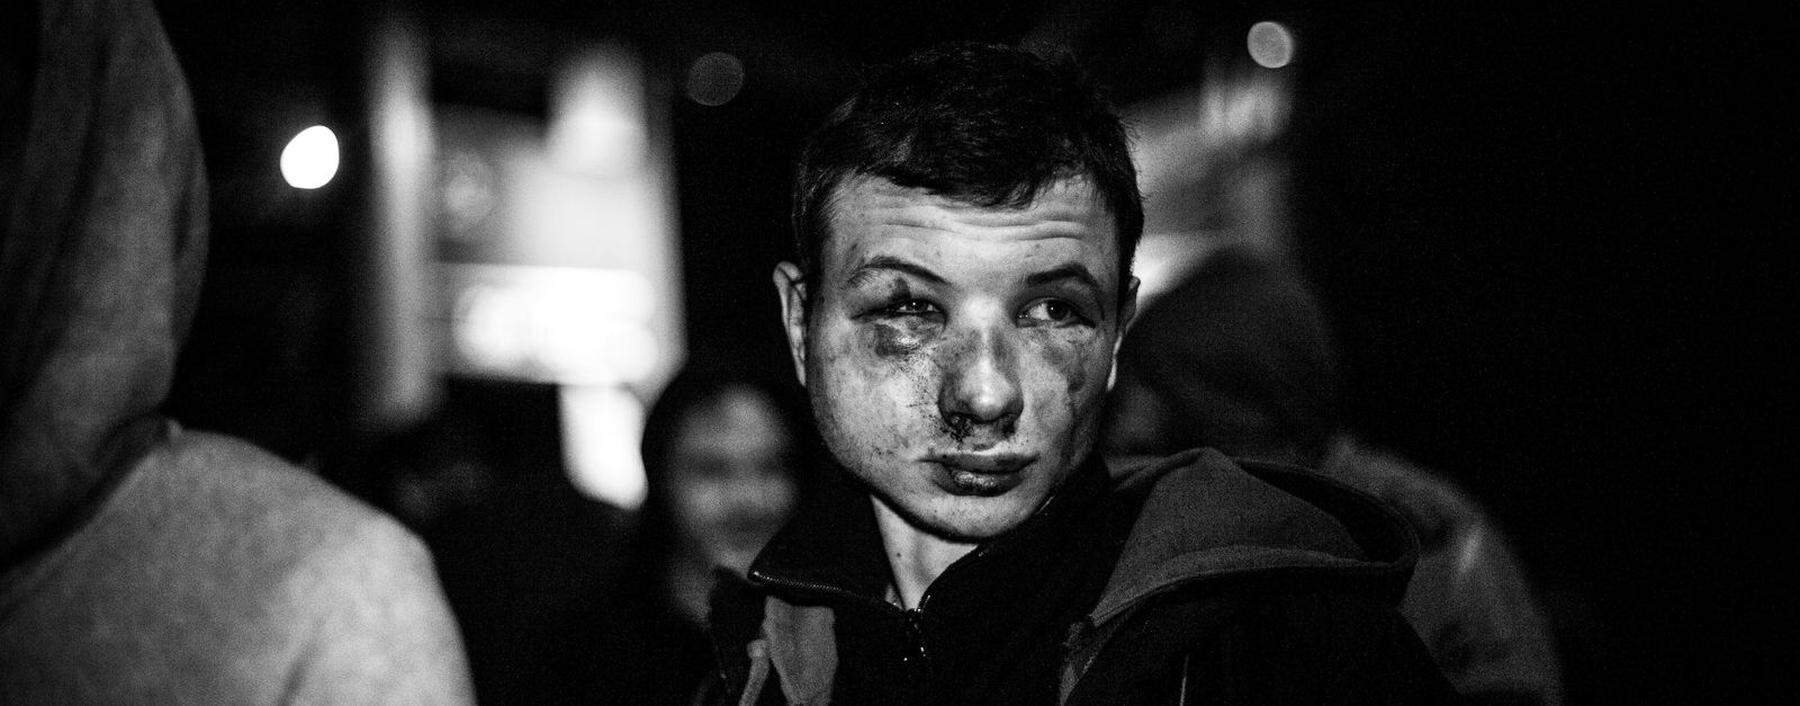 Befreiung von der postsowjetischen Abhängigkeit. Pro-Maidan-Anhänger. Poltava, Ukraine 2014. 